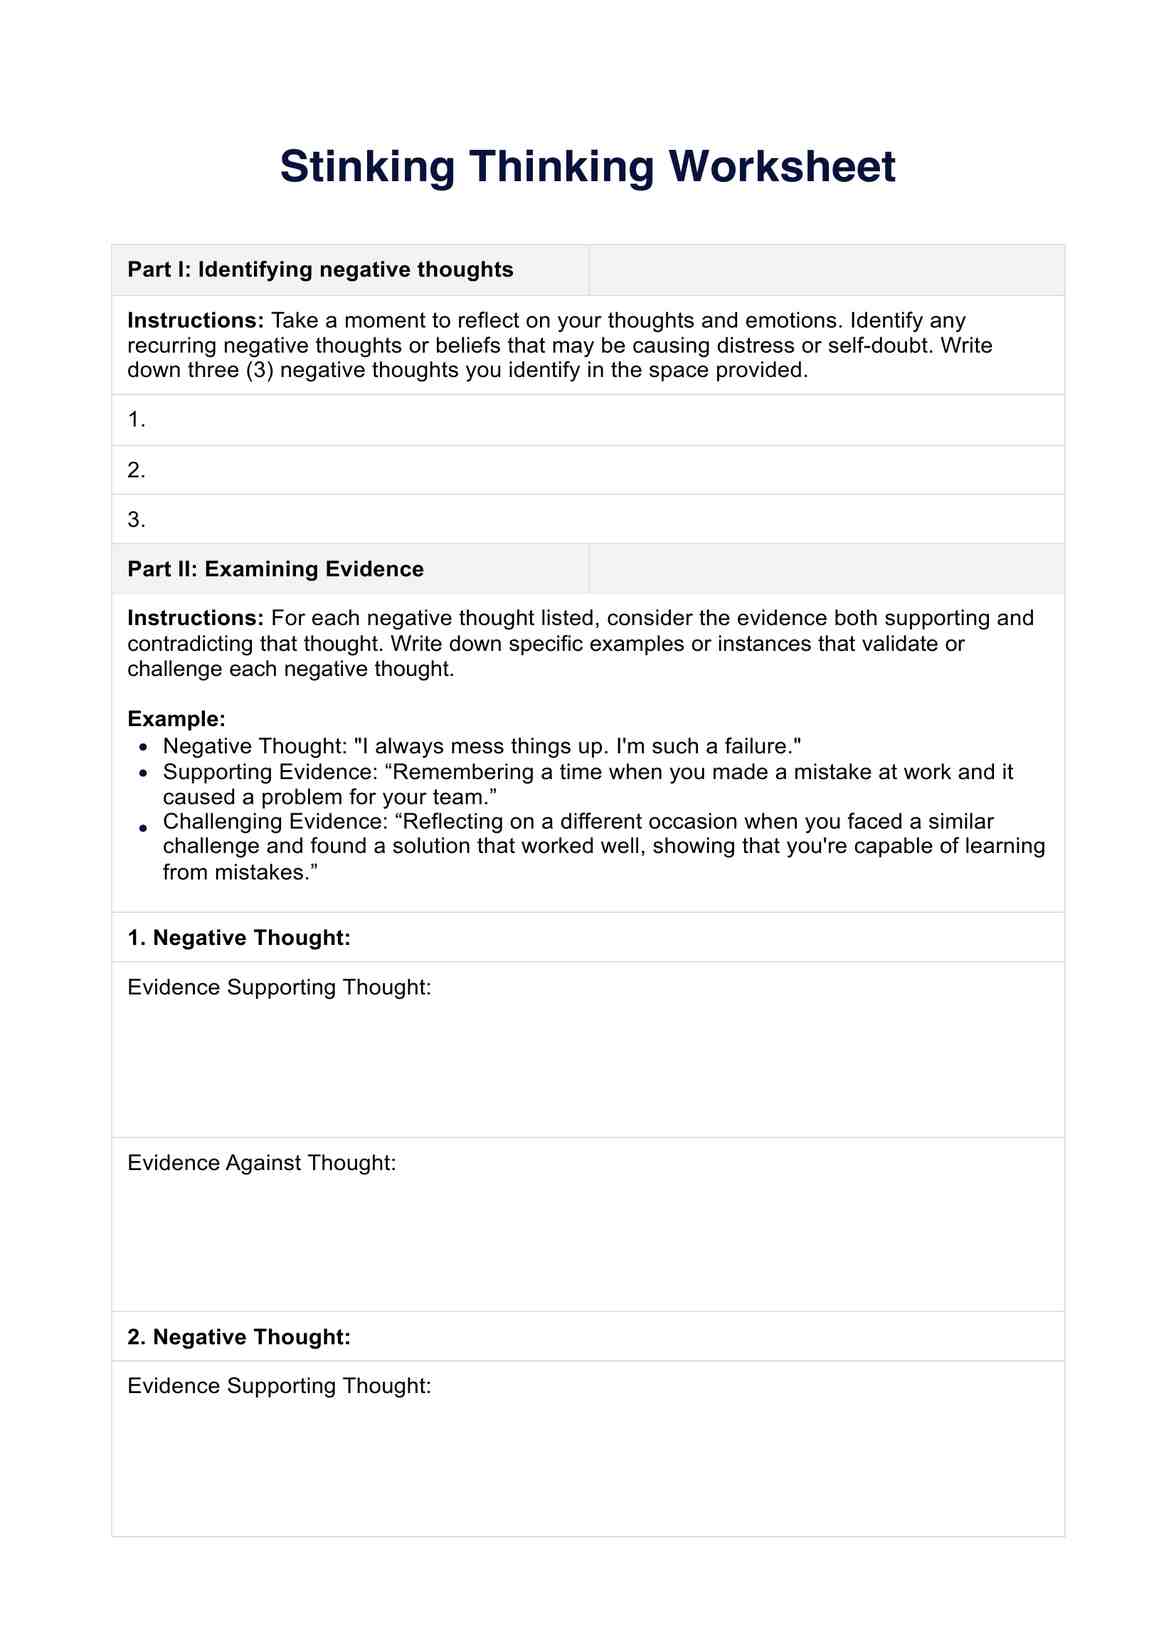 Stinking Thinking Worksheet PDF Example